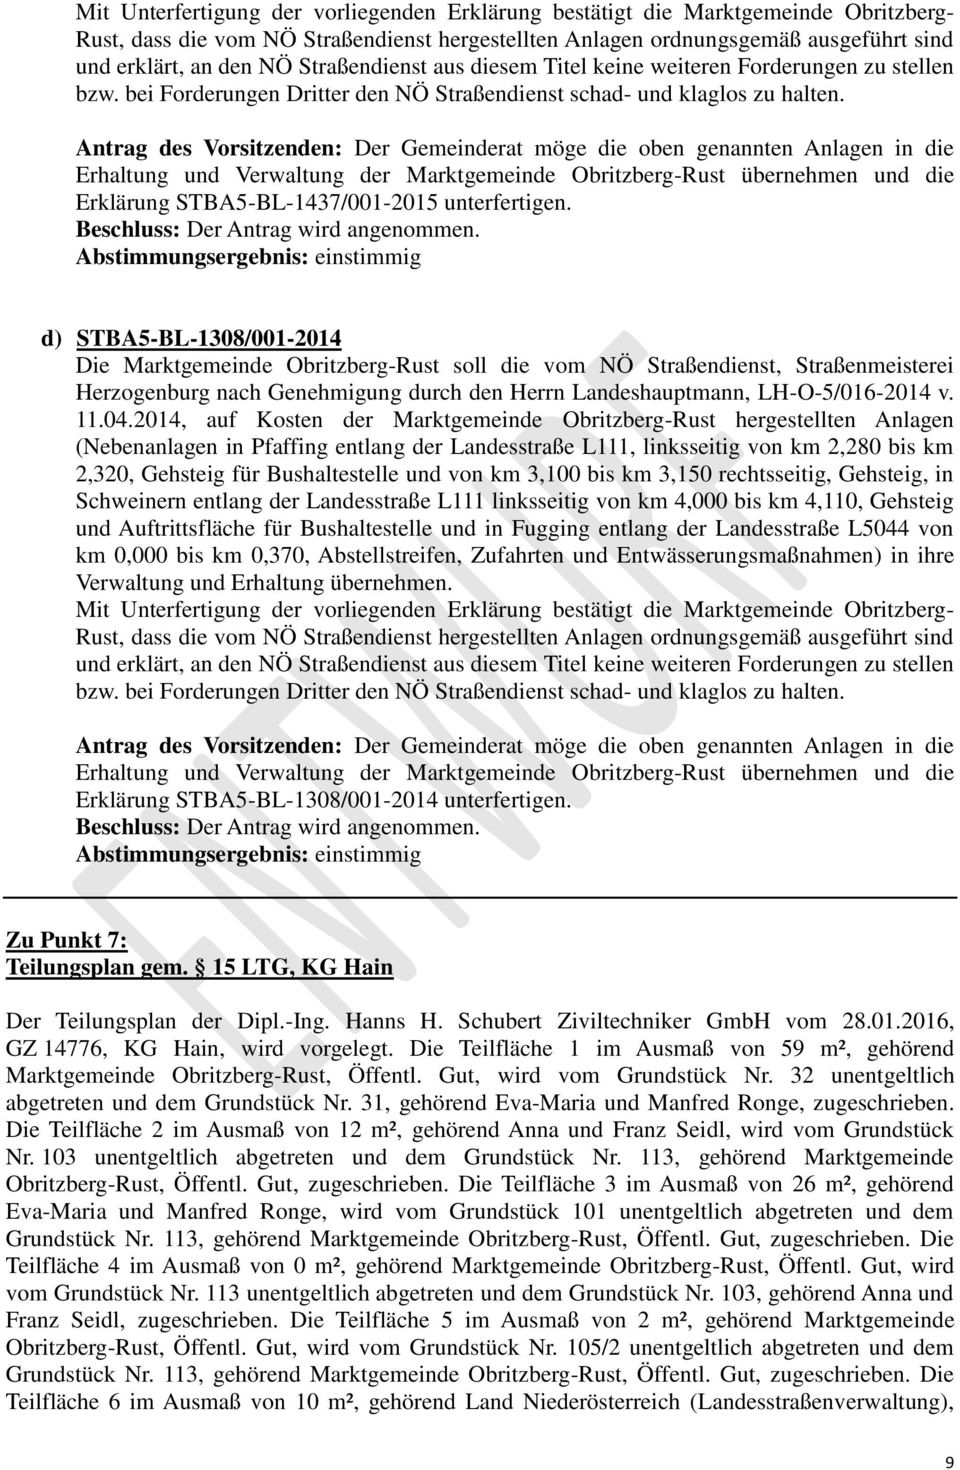 Antrag des Vorsitzenden: Der Gemeinderat möge die oben genannten Anlagen in die Erhaltung und Verwaltung der Marktgemeinde Obritzberg-Rust übernehmen und die Erklärung STBA5-BL-1437/001-2015